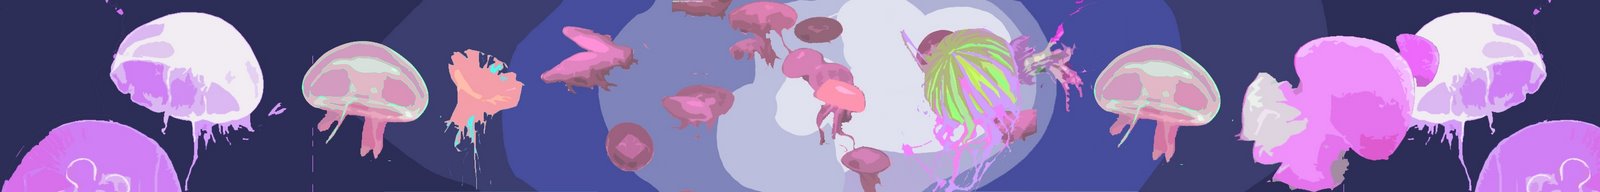 [mural+medusas+felices.jpg]